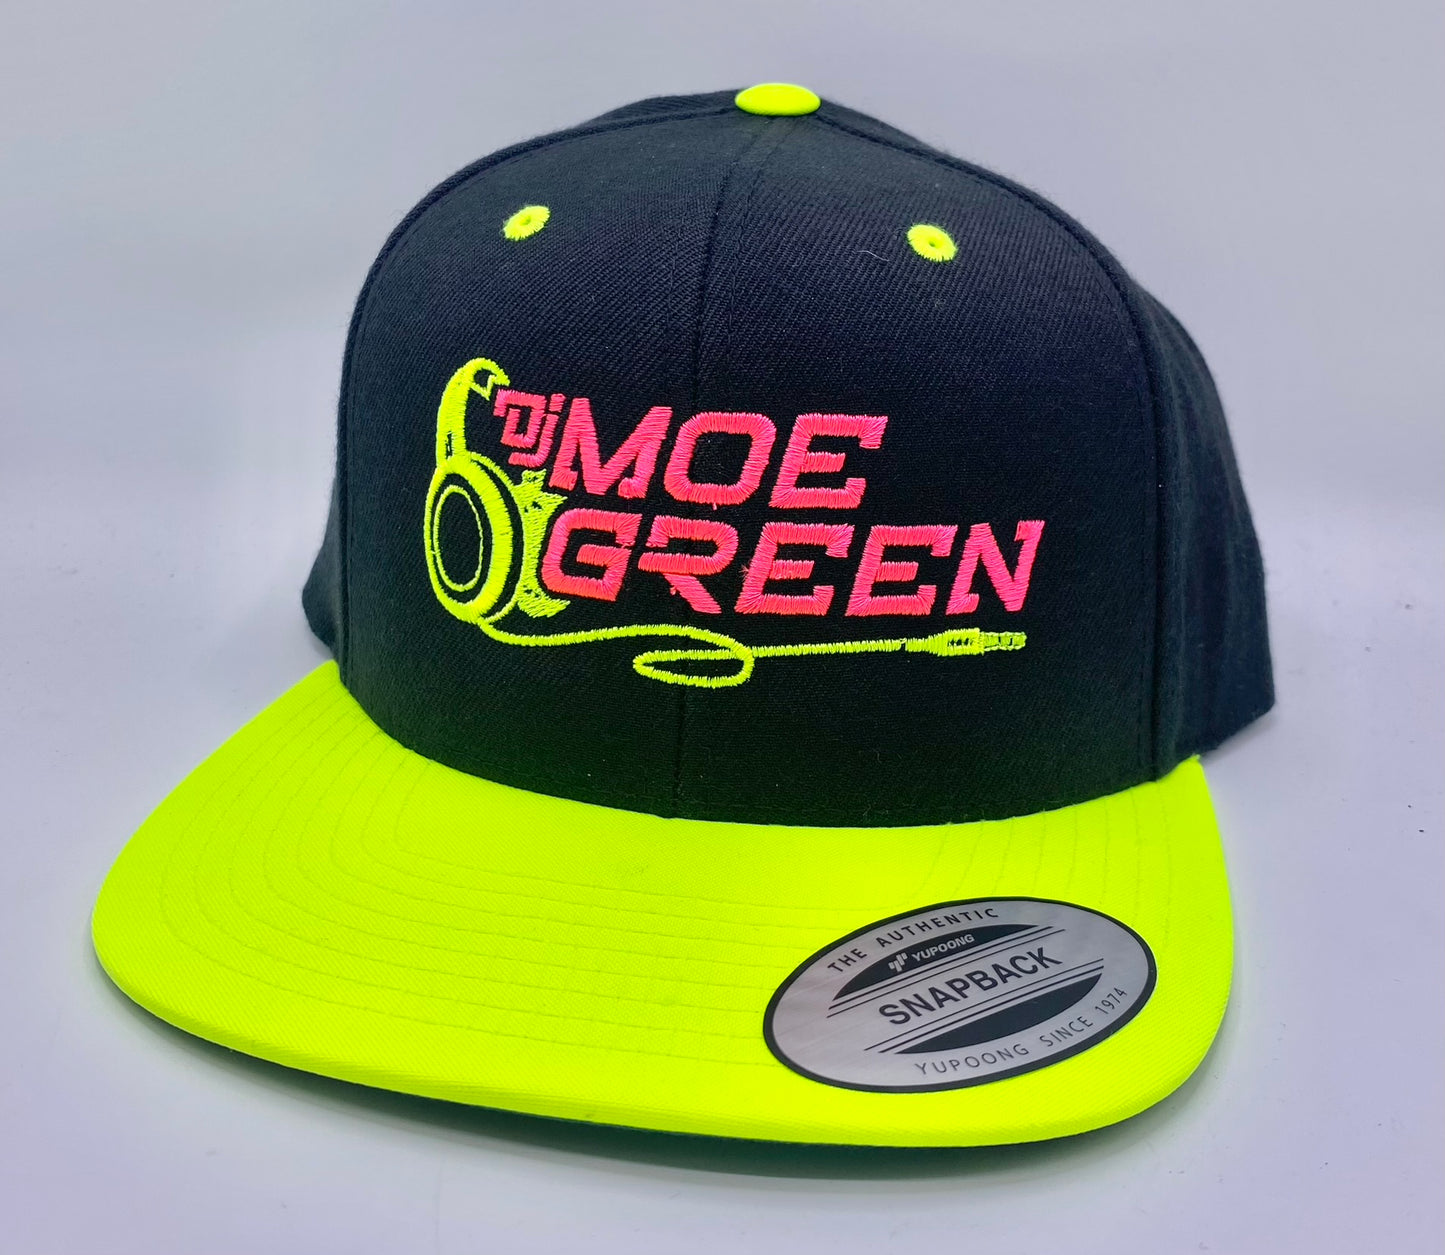 DJ Moe Green Flat Bill Snapback Hats